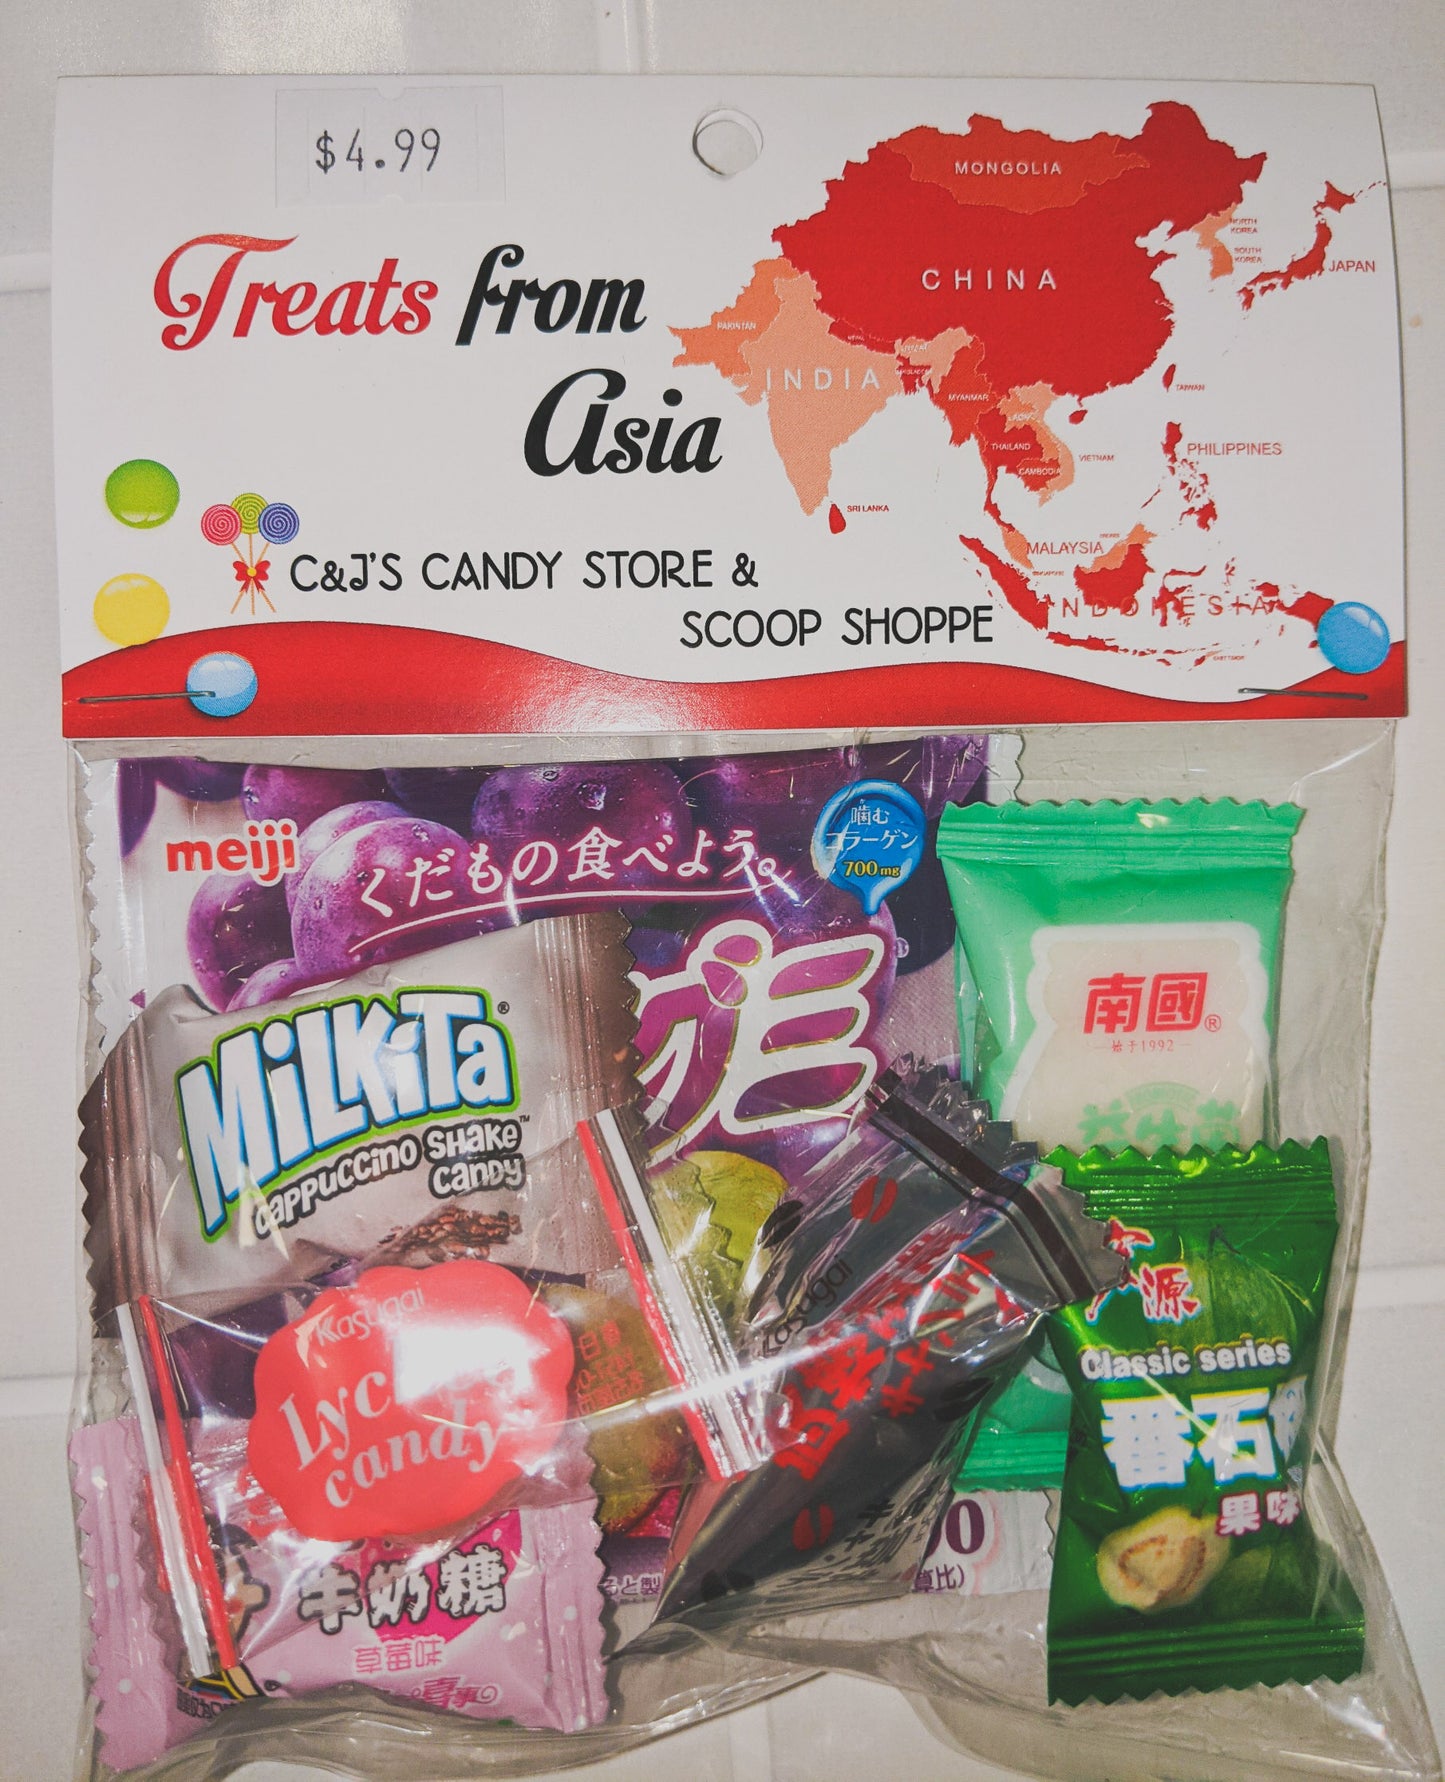 Treats from Asia